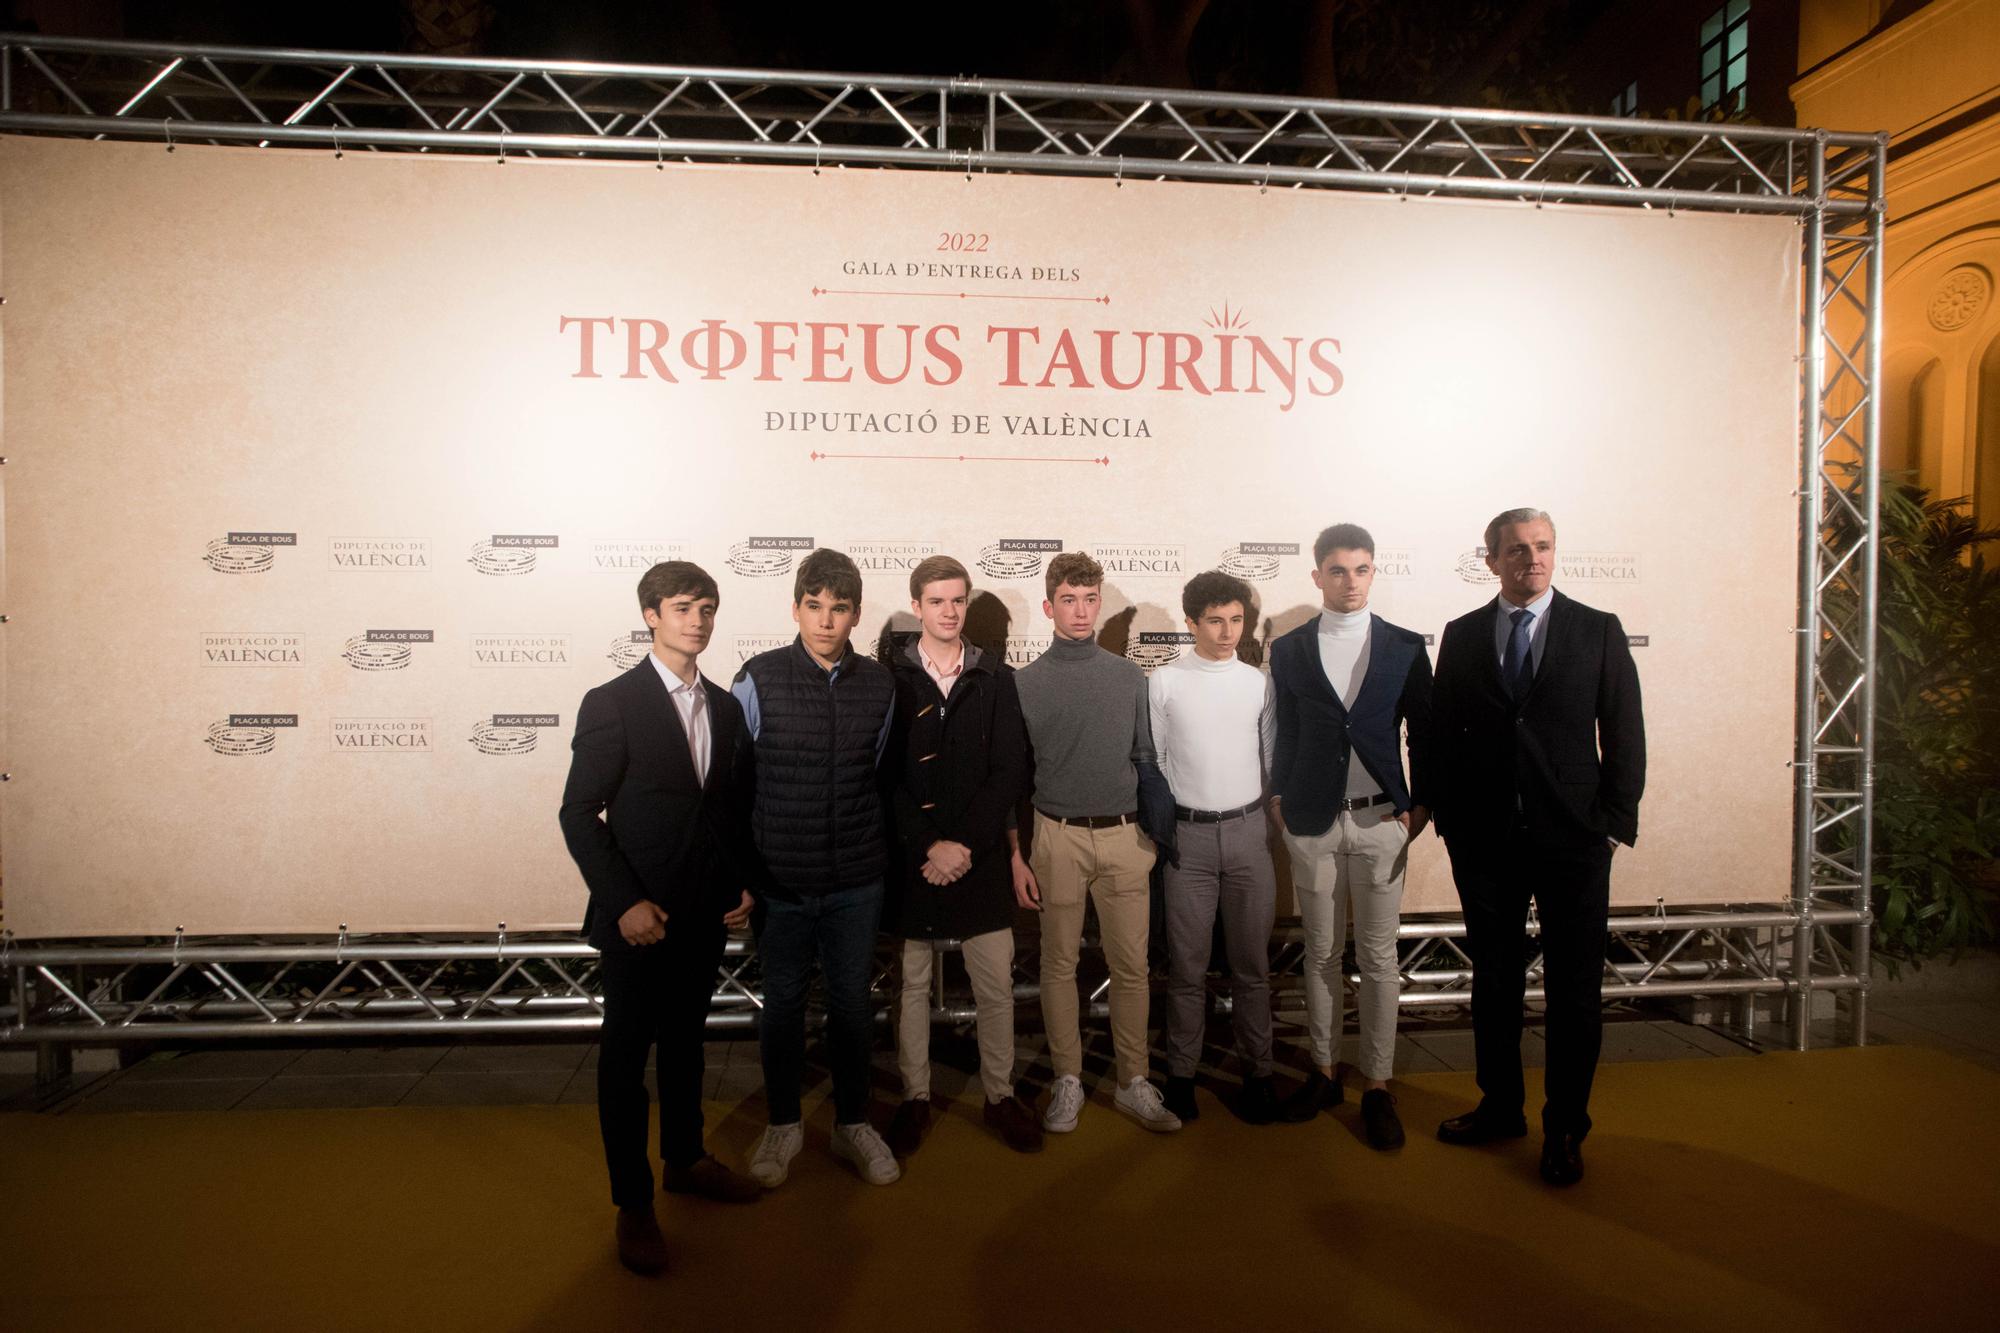 La gala de los triunfadores del año taurino en València